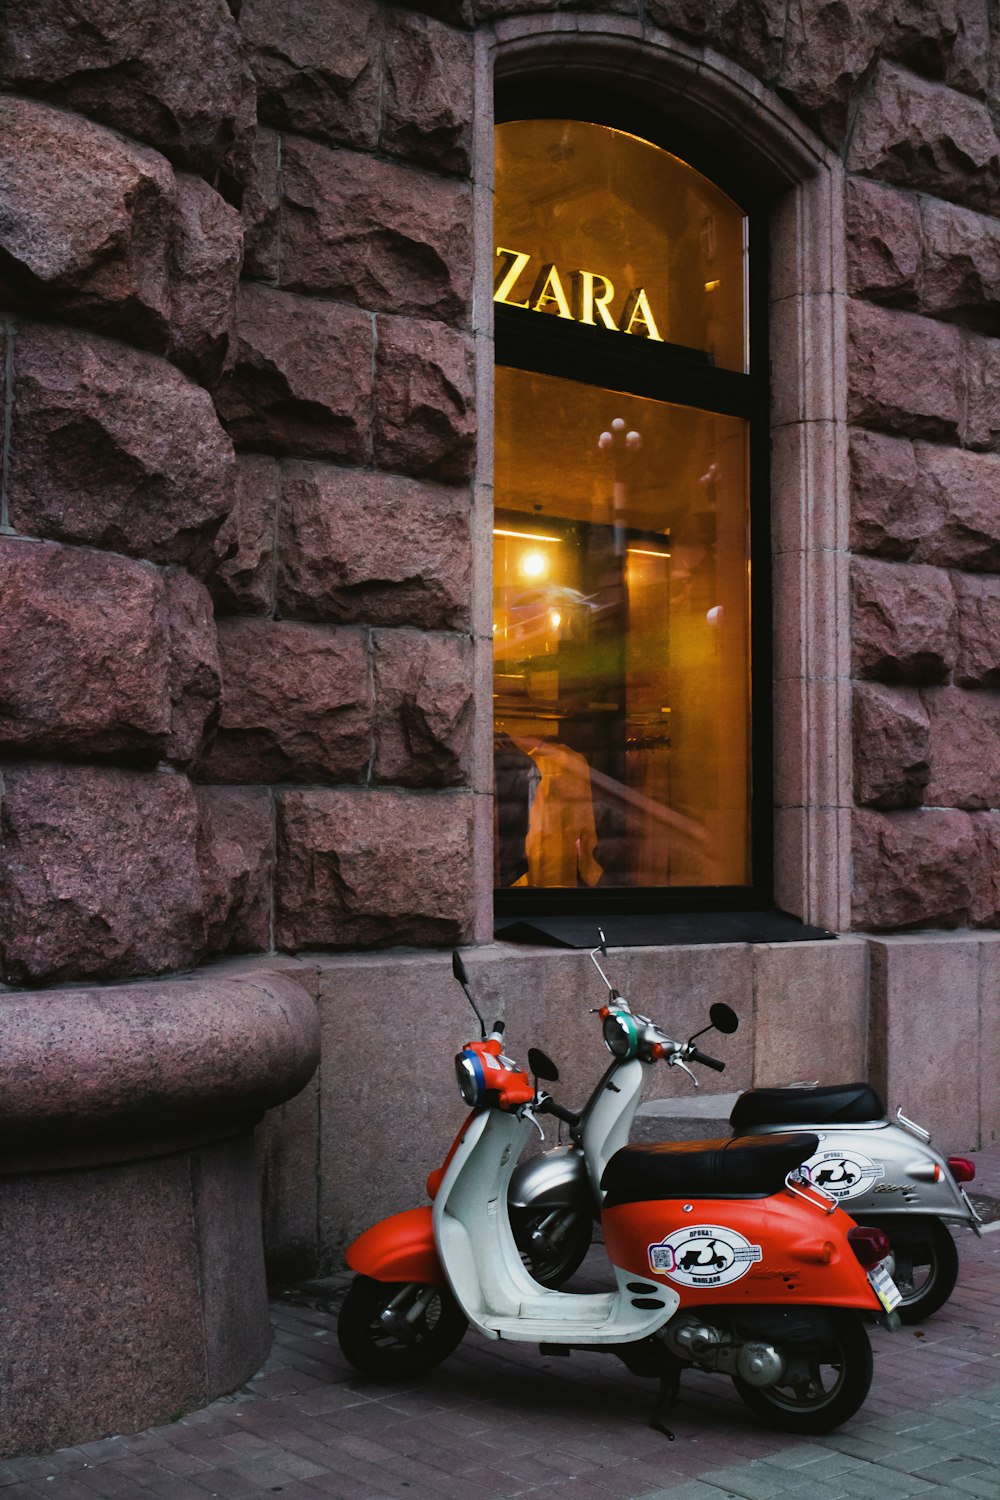 scooter motor vermelho e preto estacionado ao lado da parede de tijolos marrons